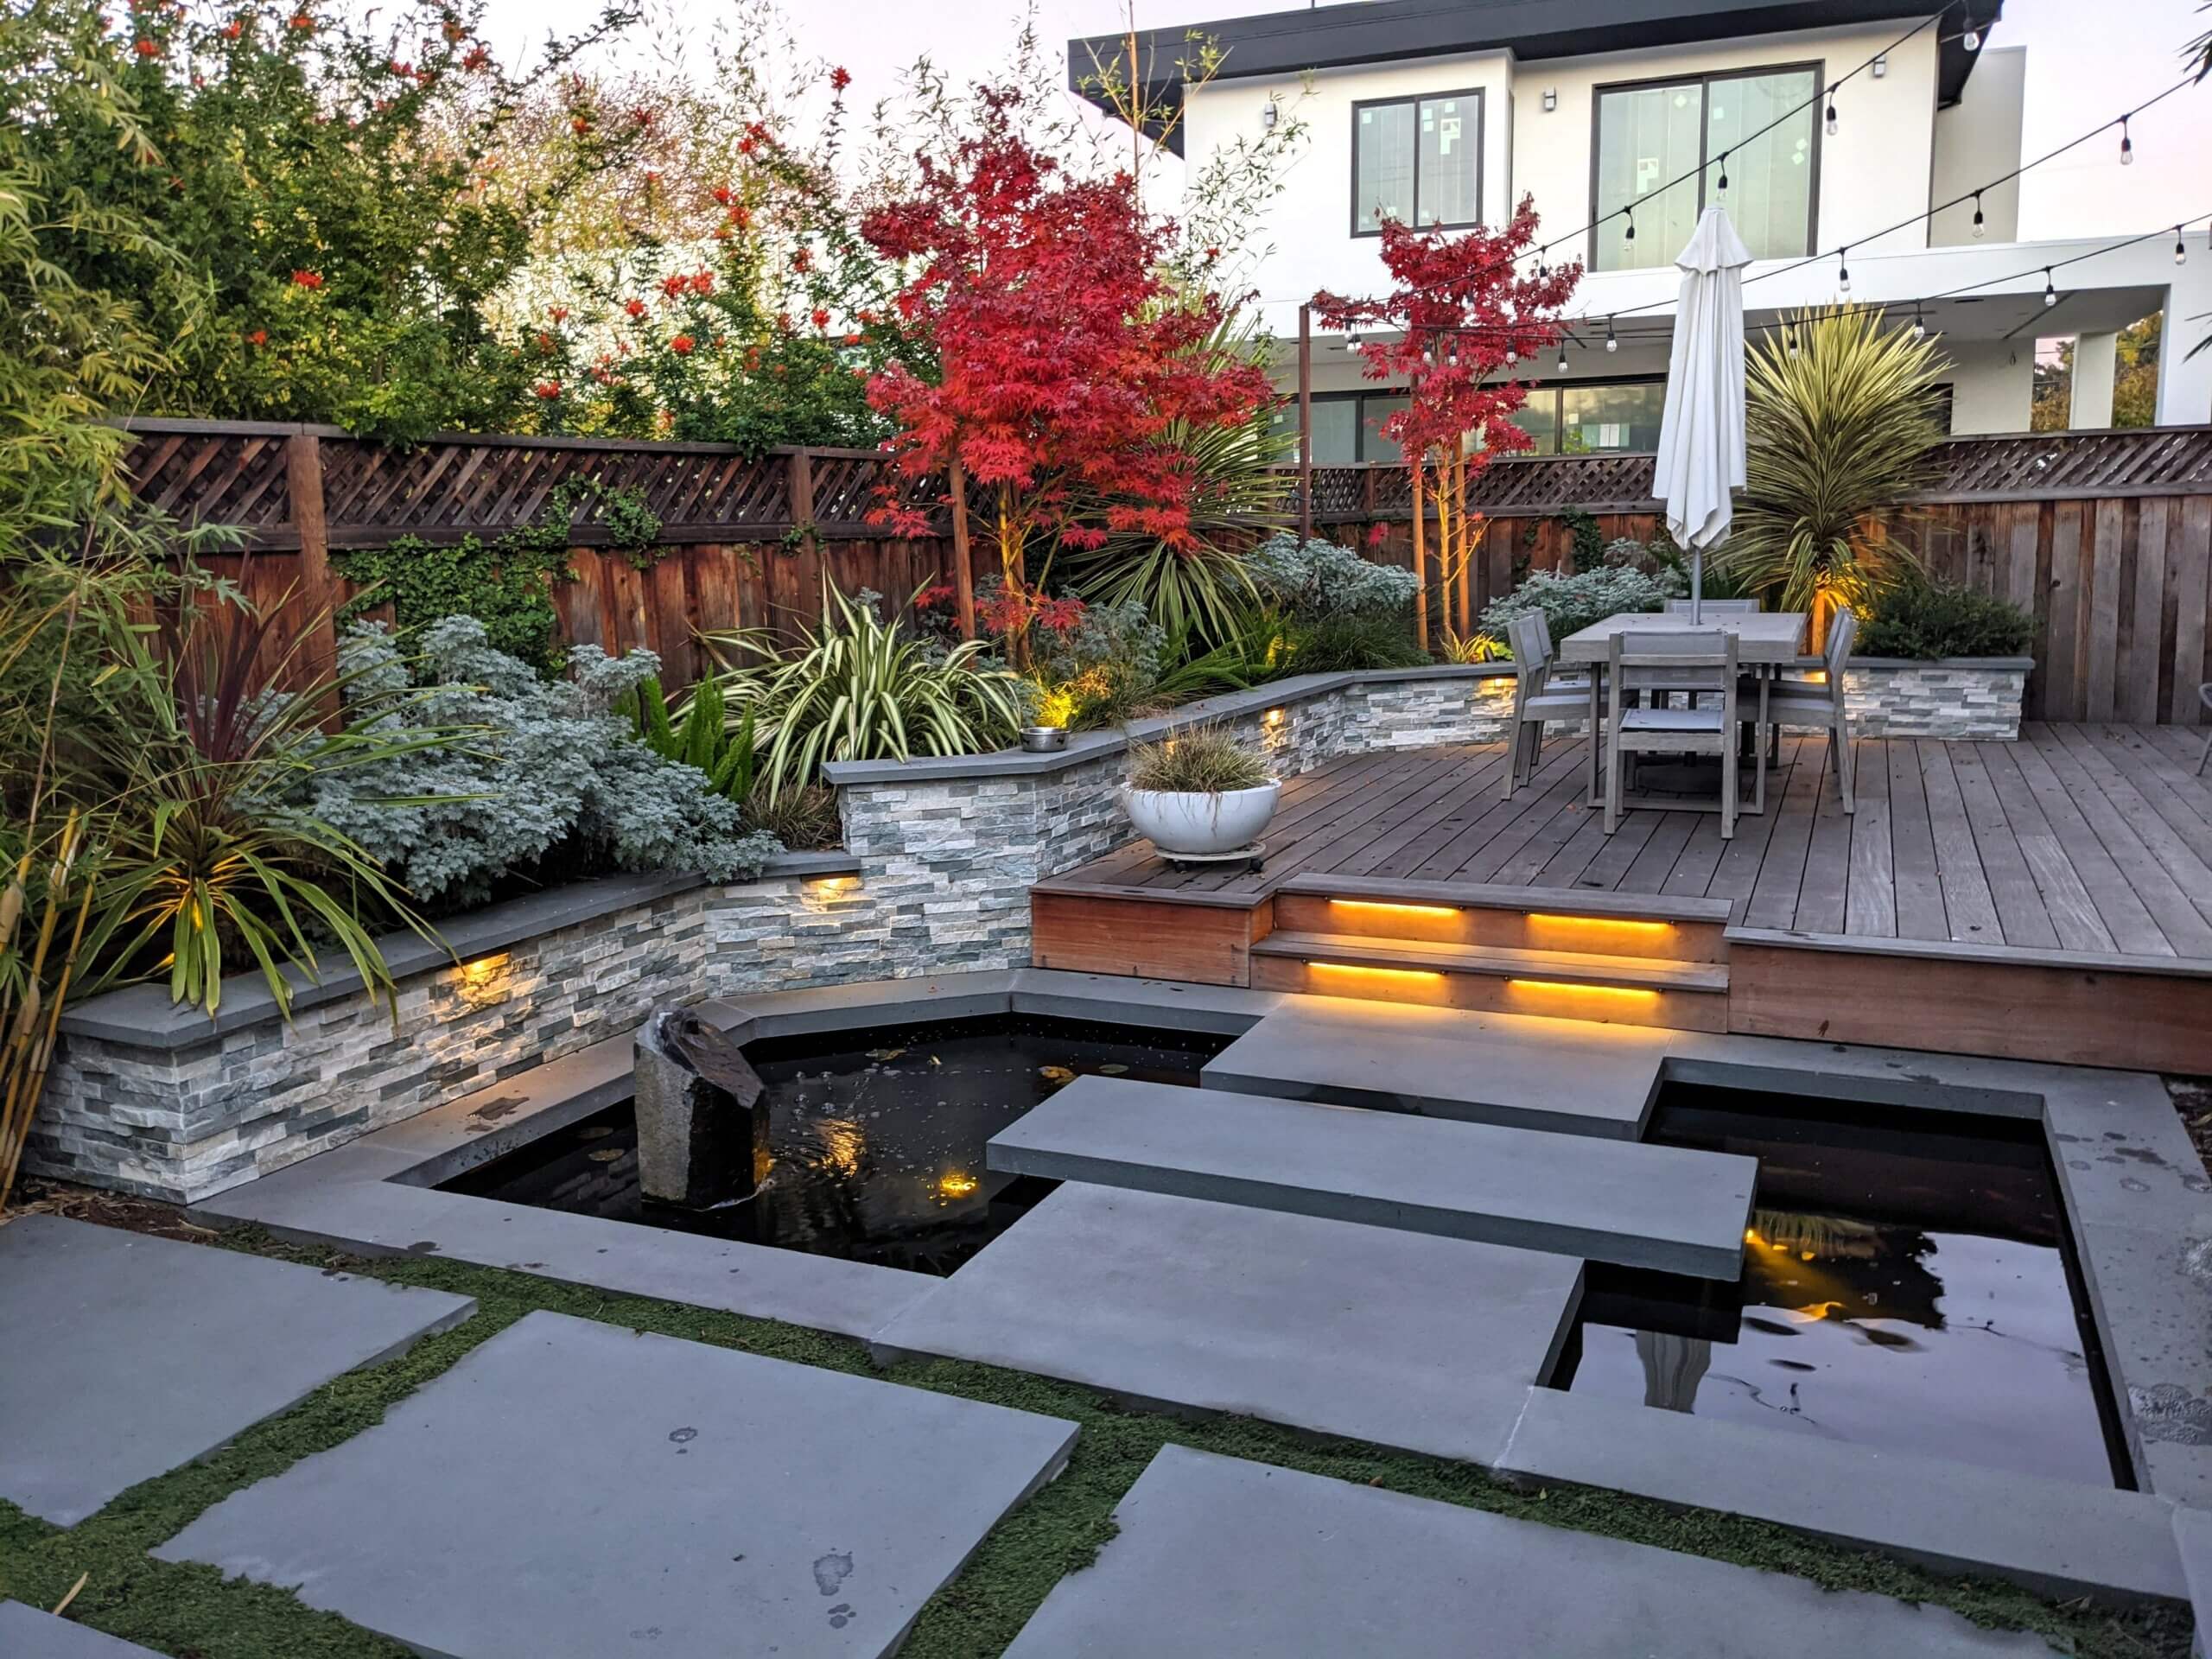 Zen backyard lands0sape showing red fall foliage colors